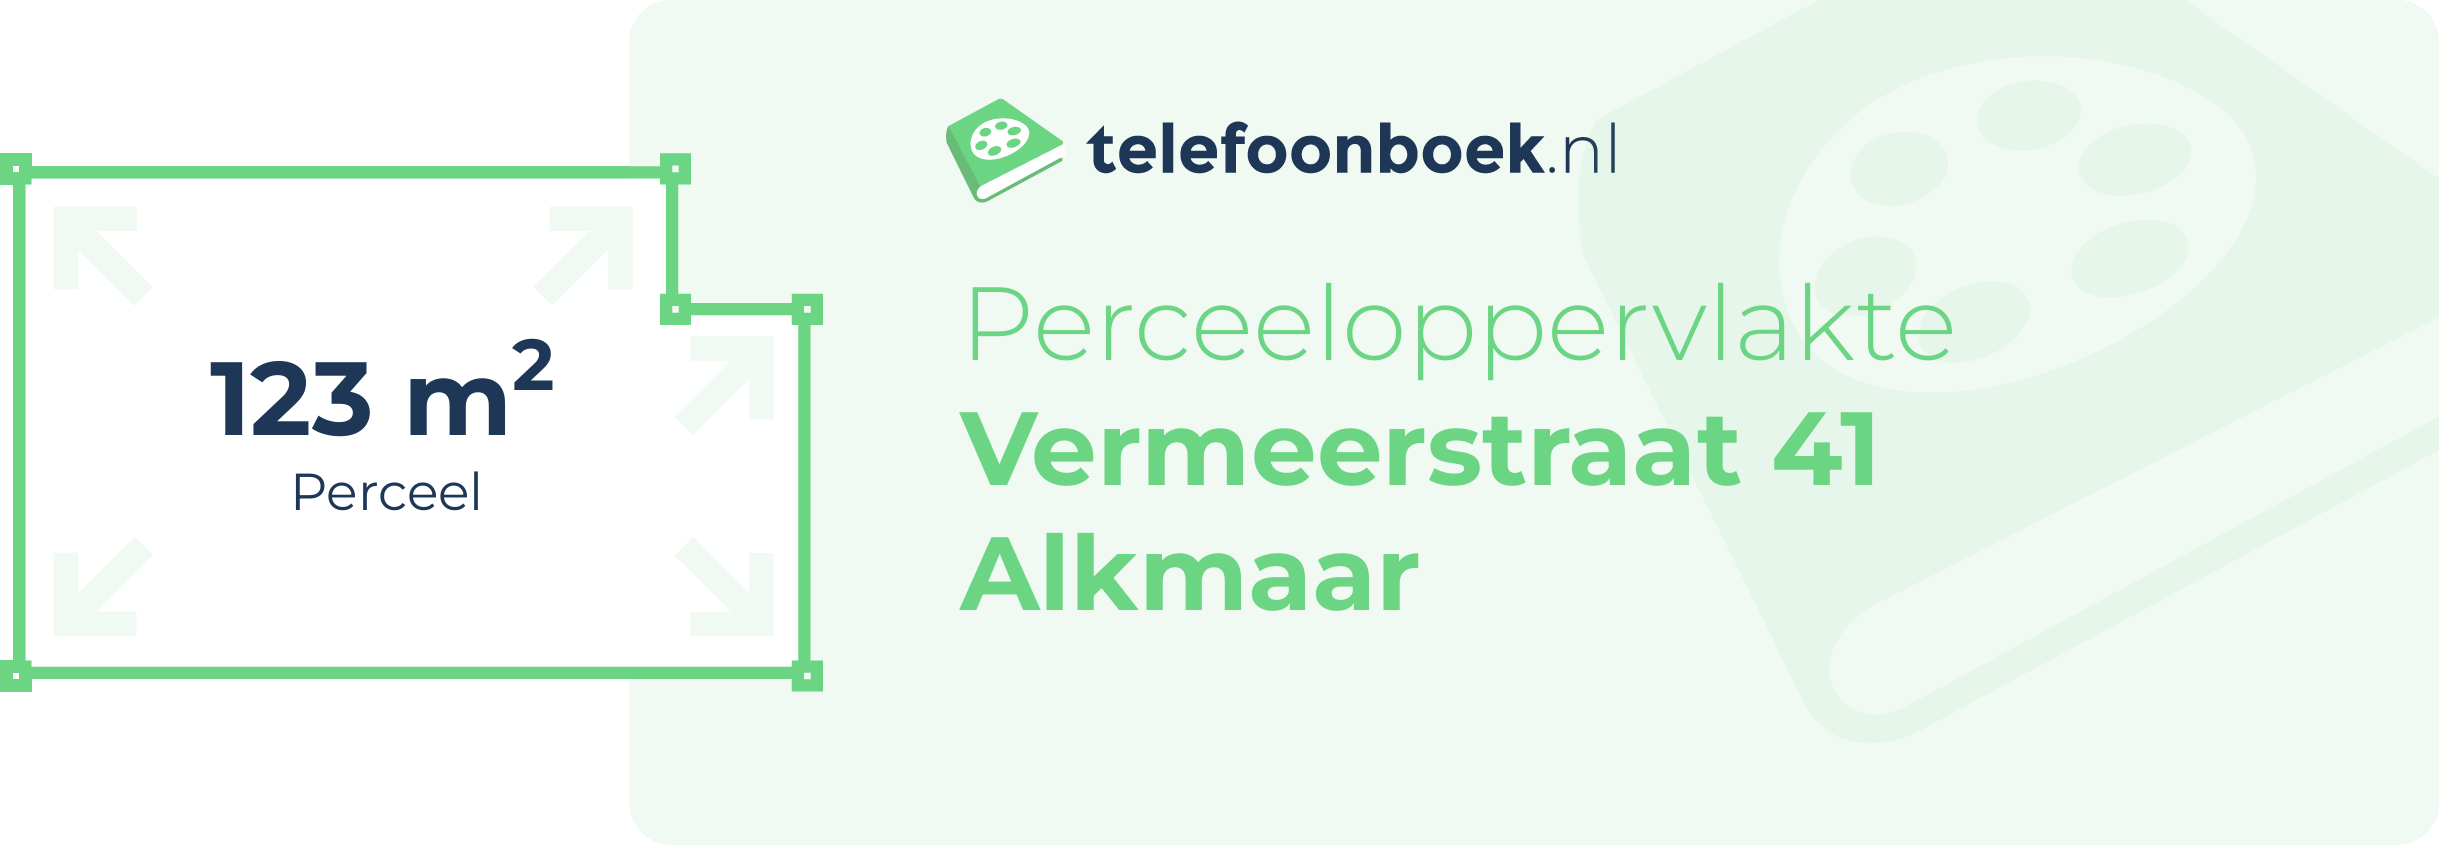 Perceeloppervlakte Vermeerstraat 41 Alkmaar